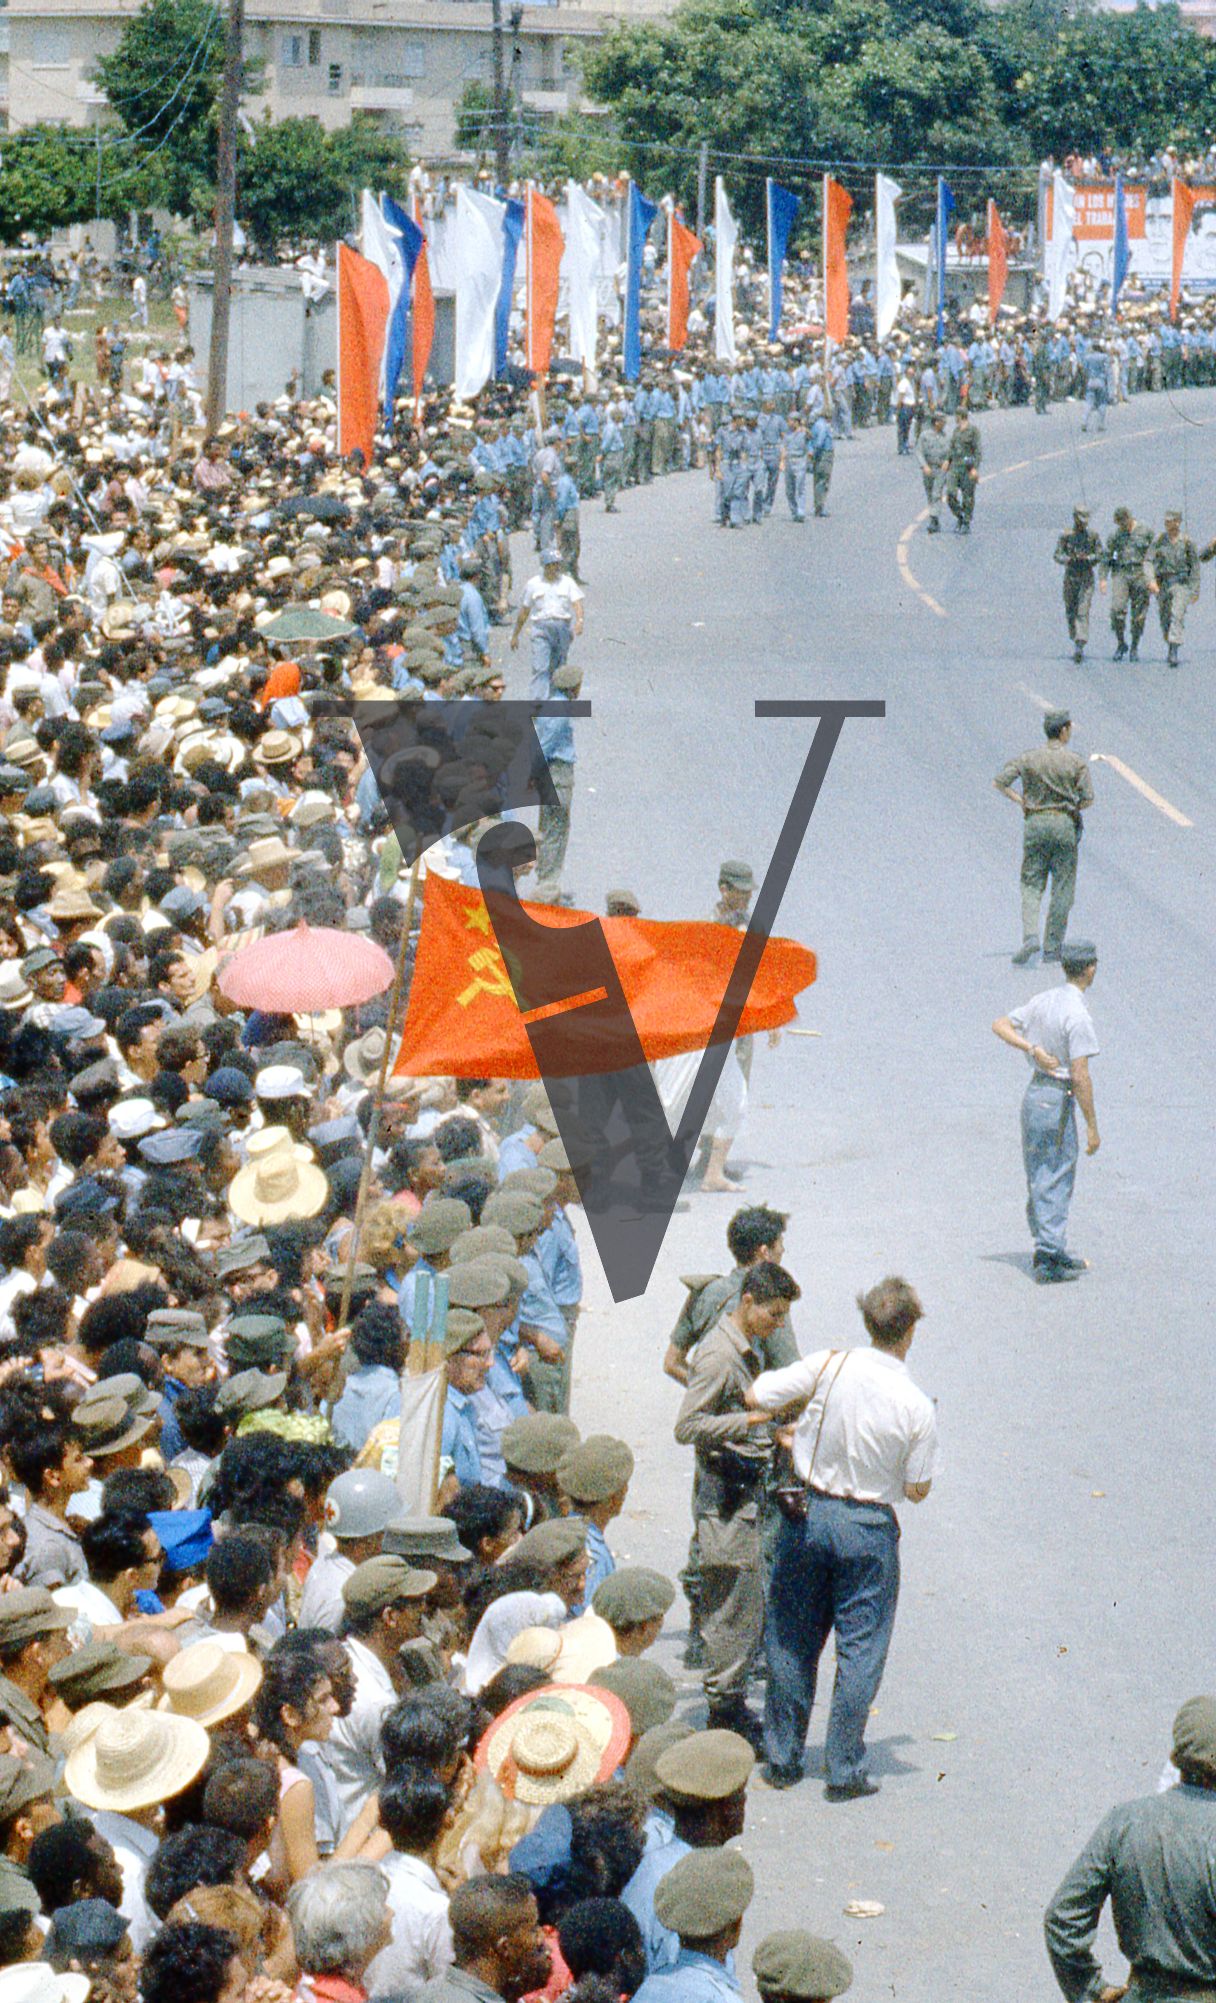 Cuba, Havana, May 1st Parade, military parade, Soviet flag waves.